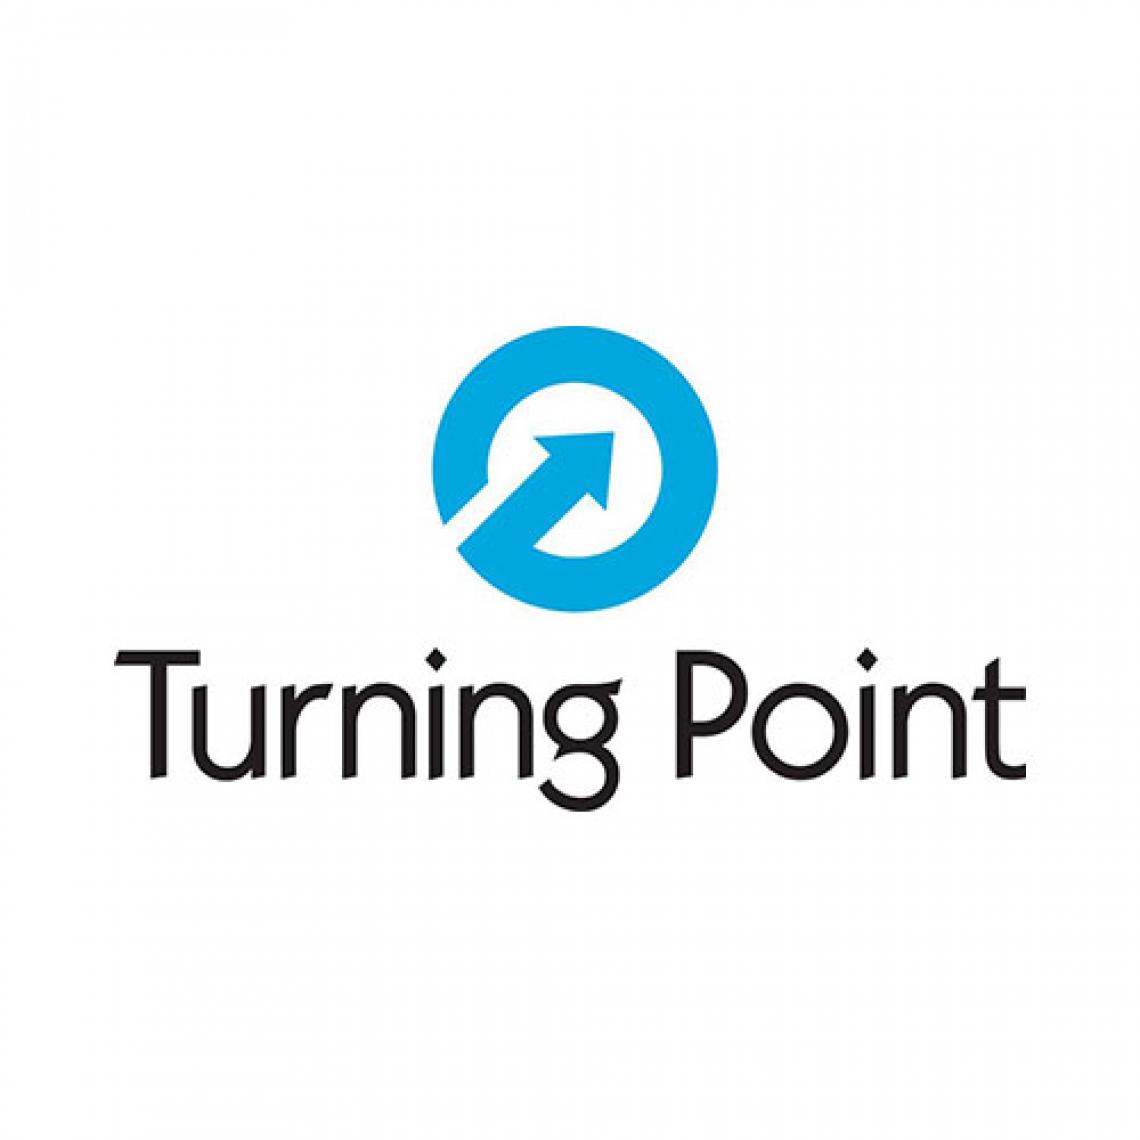 TurningPoint